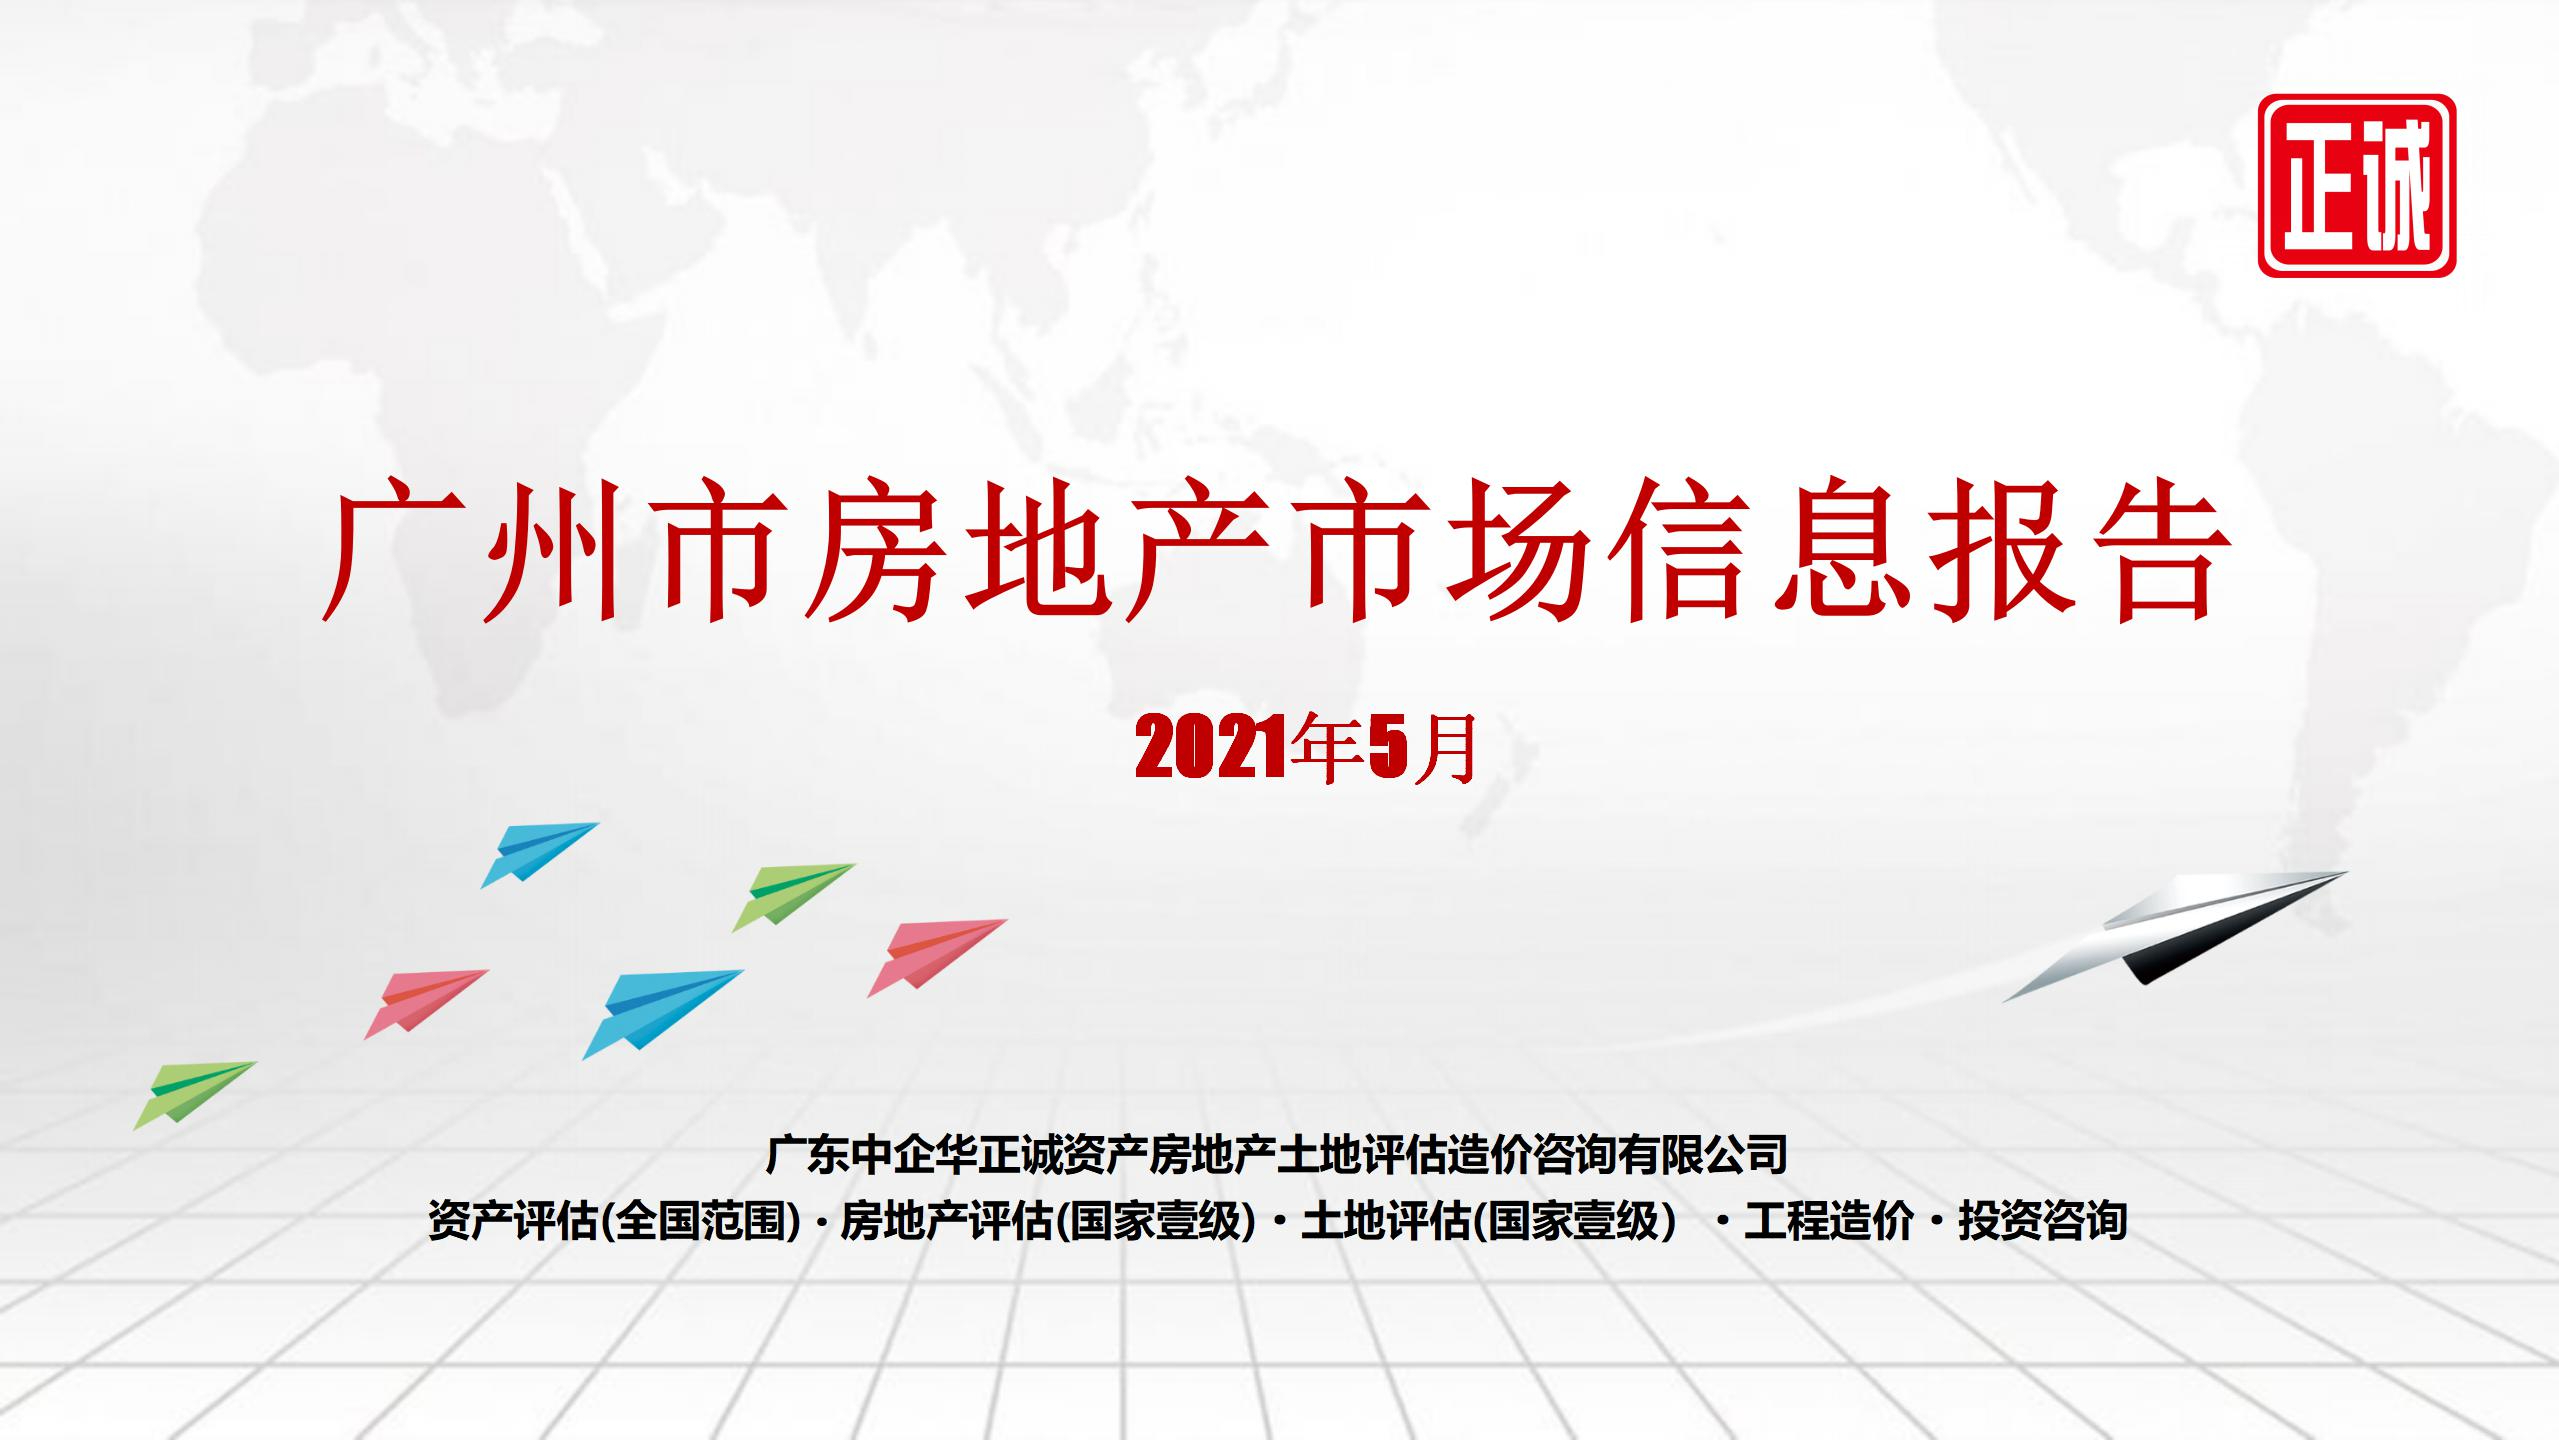 2021年5月广州市房地产市场信息报告